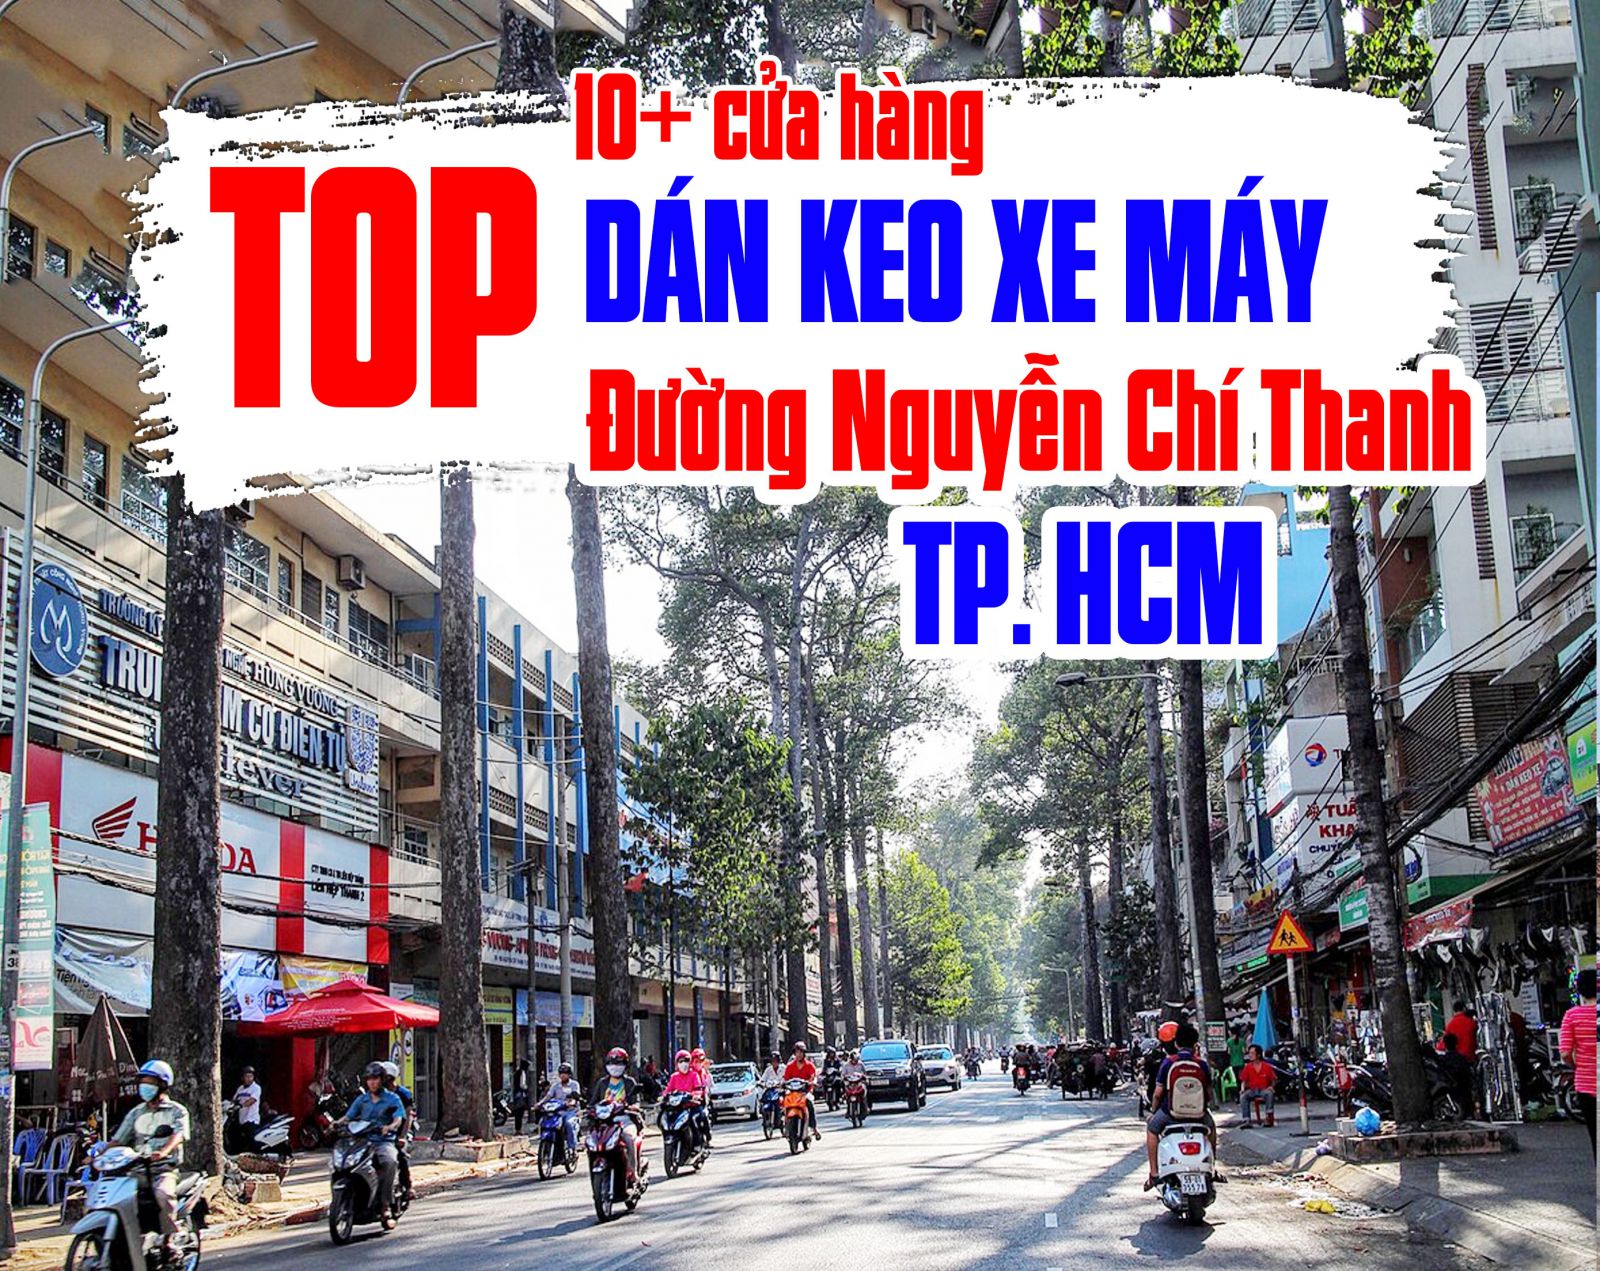 [TOP] 9+ tiệm dán decal xe máy tại đường Hậu Giang, quận 6 uy tín, chất lượng 2023